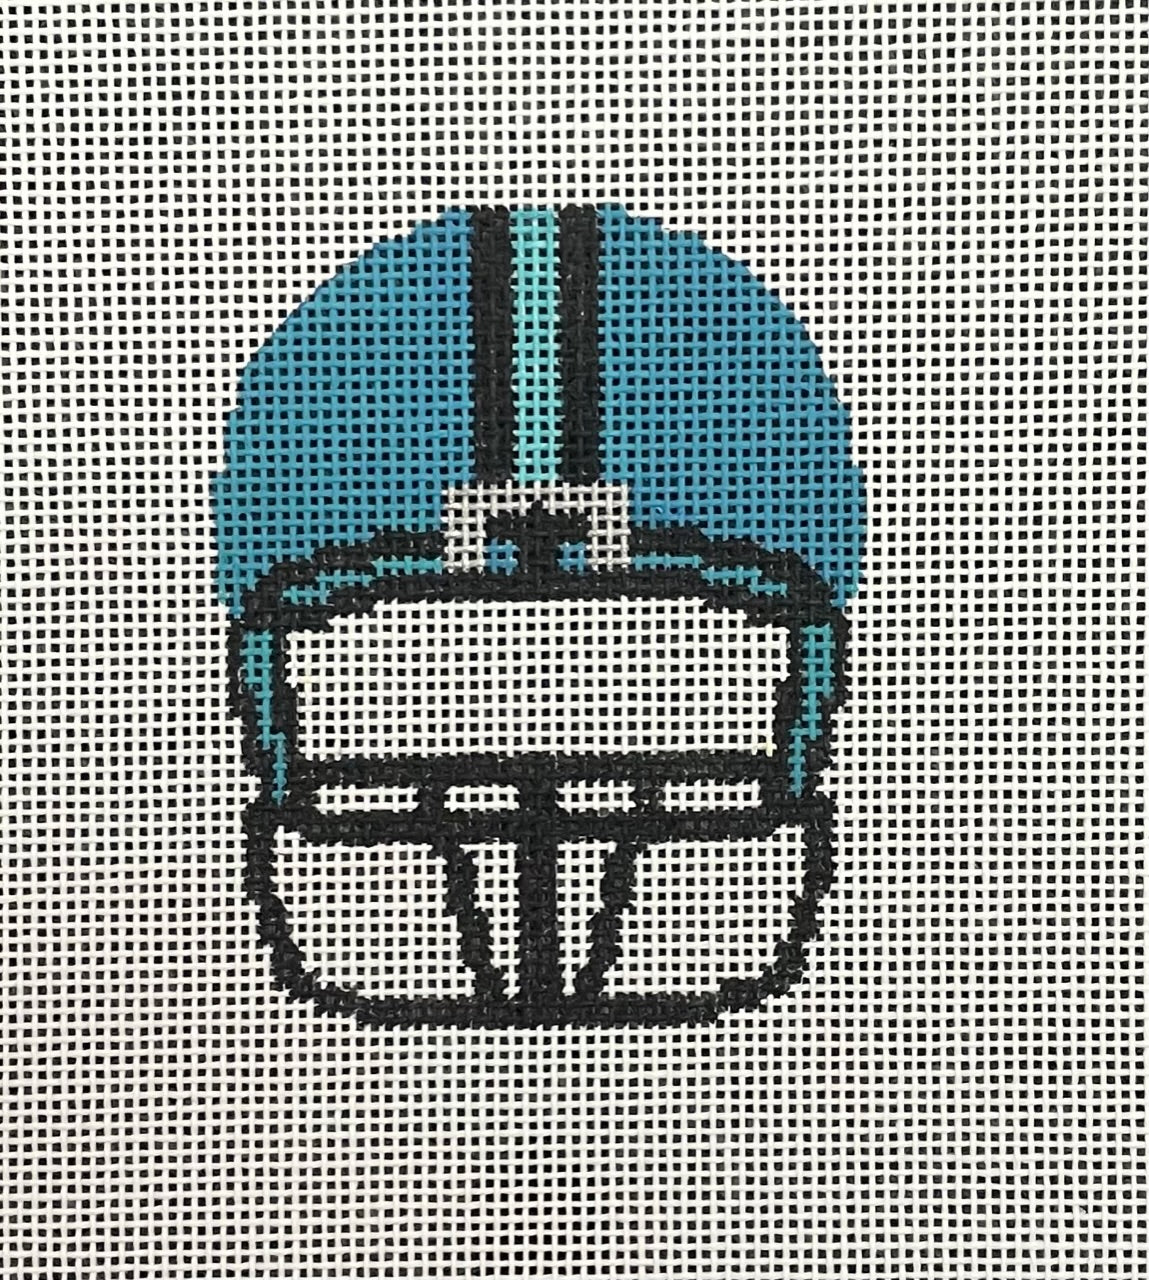 Helmet: Football